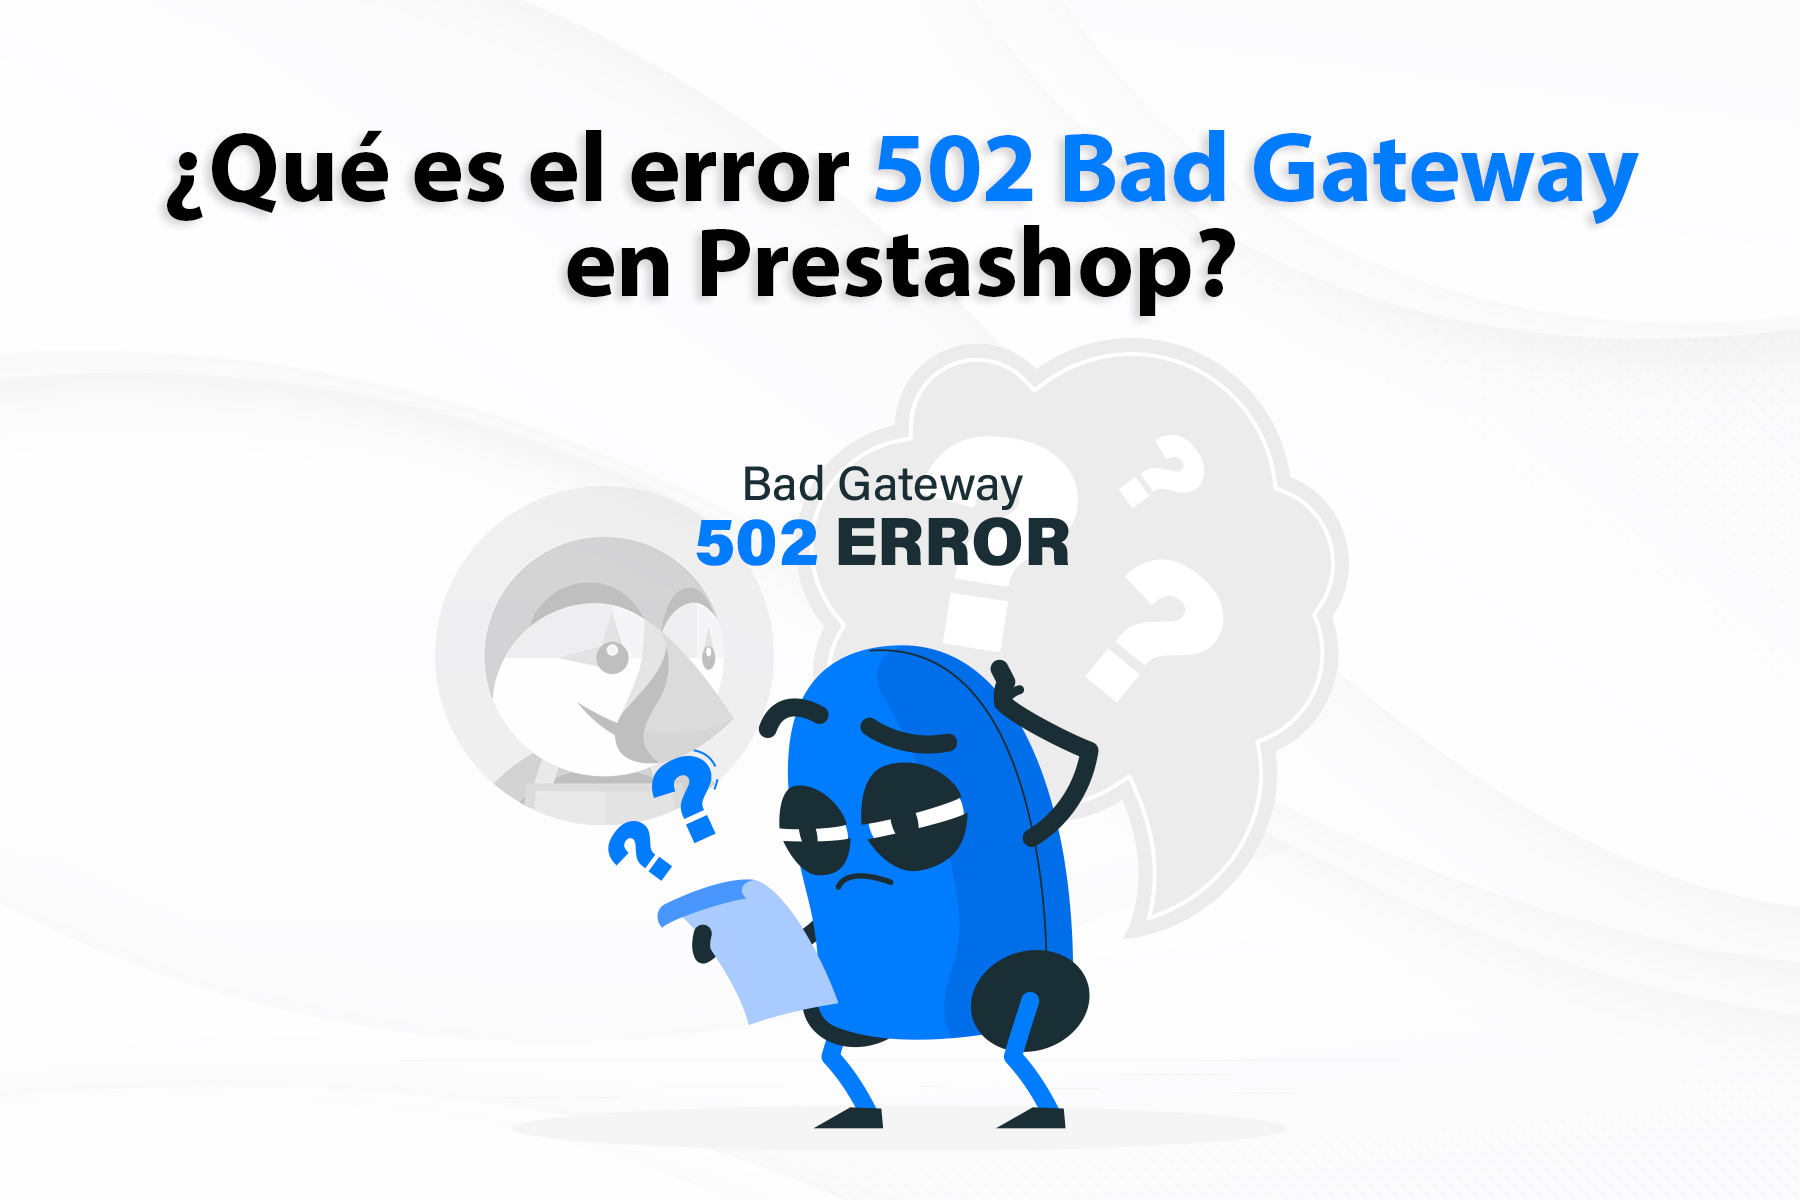 Error 502 Bad Gateway en Prestashop